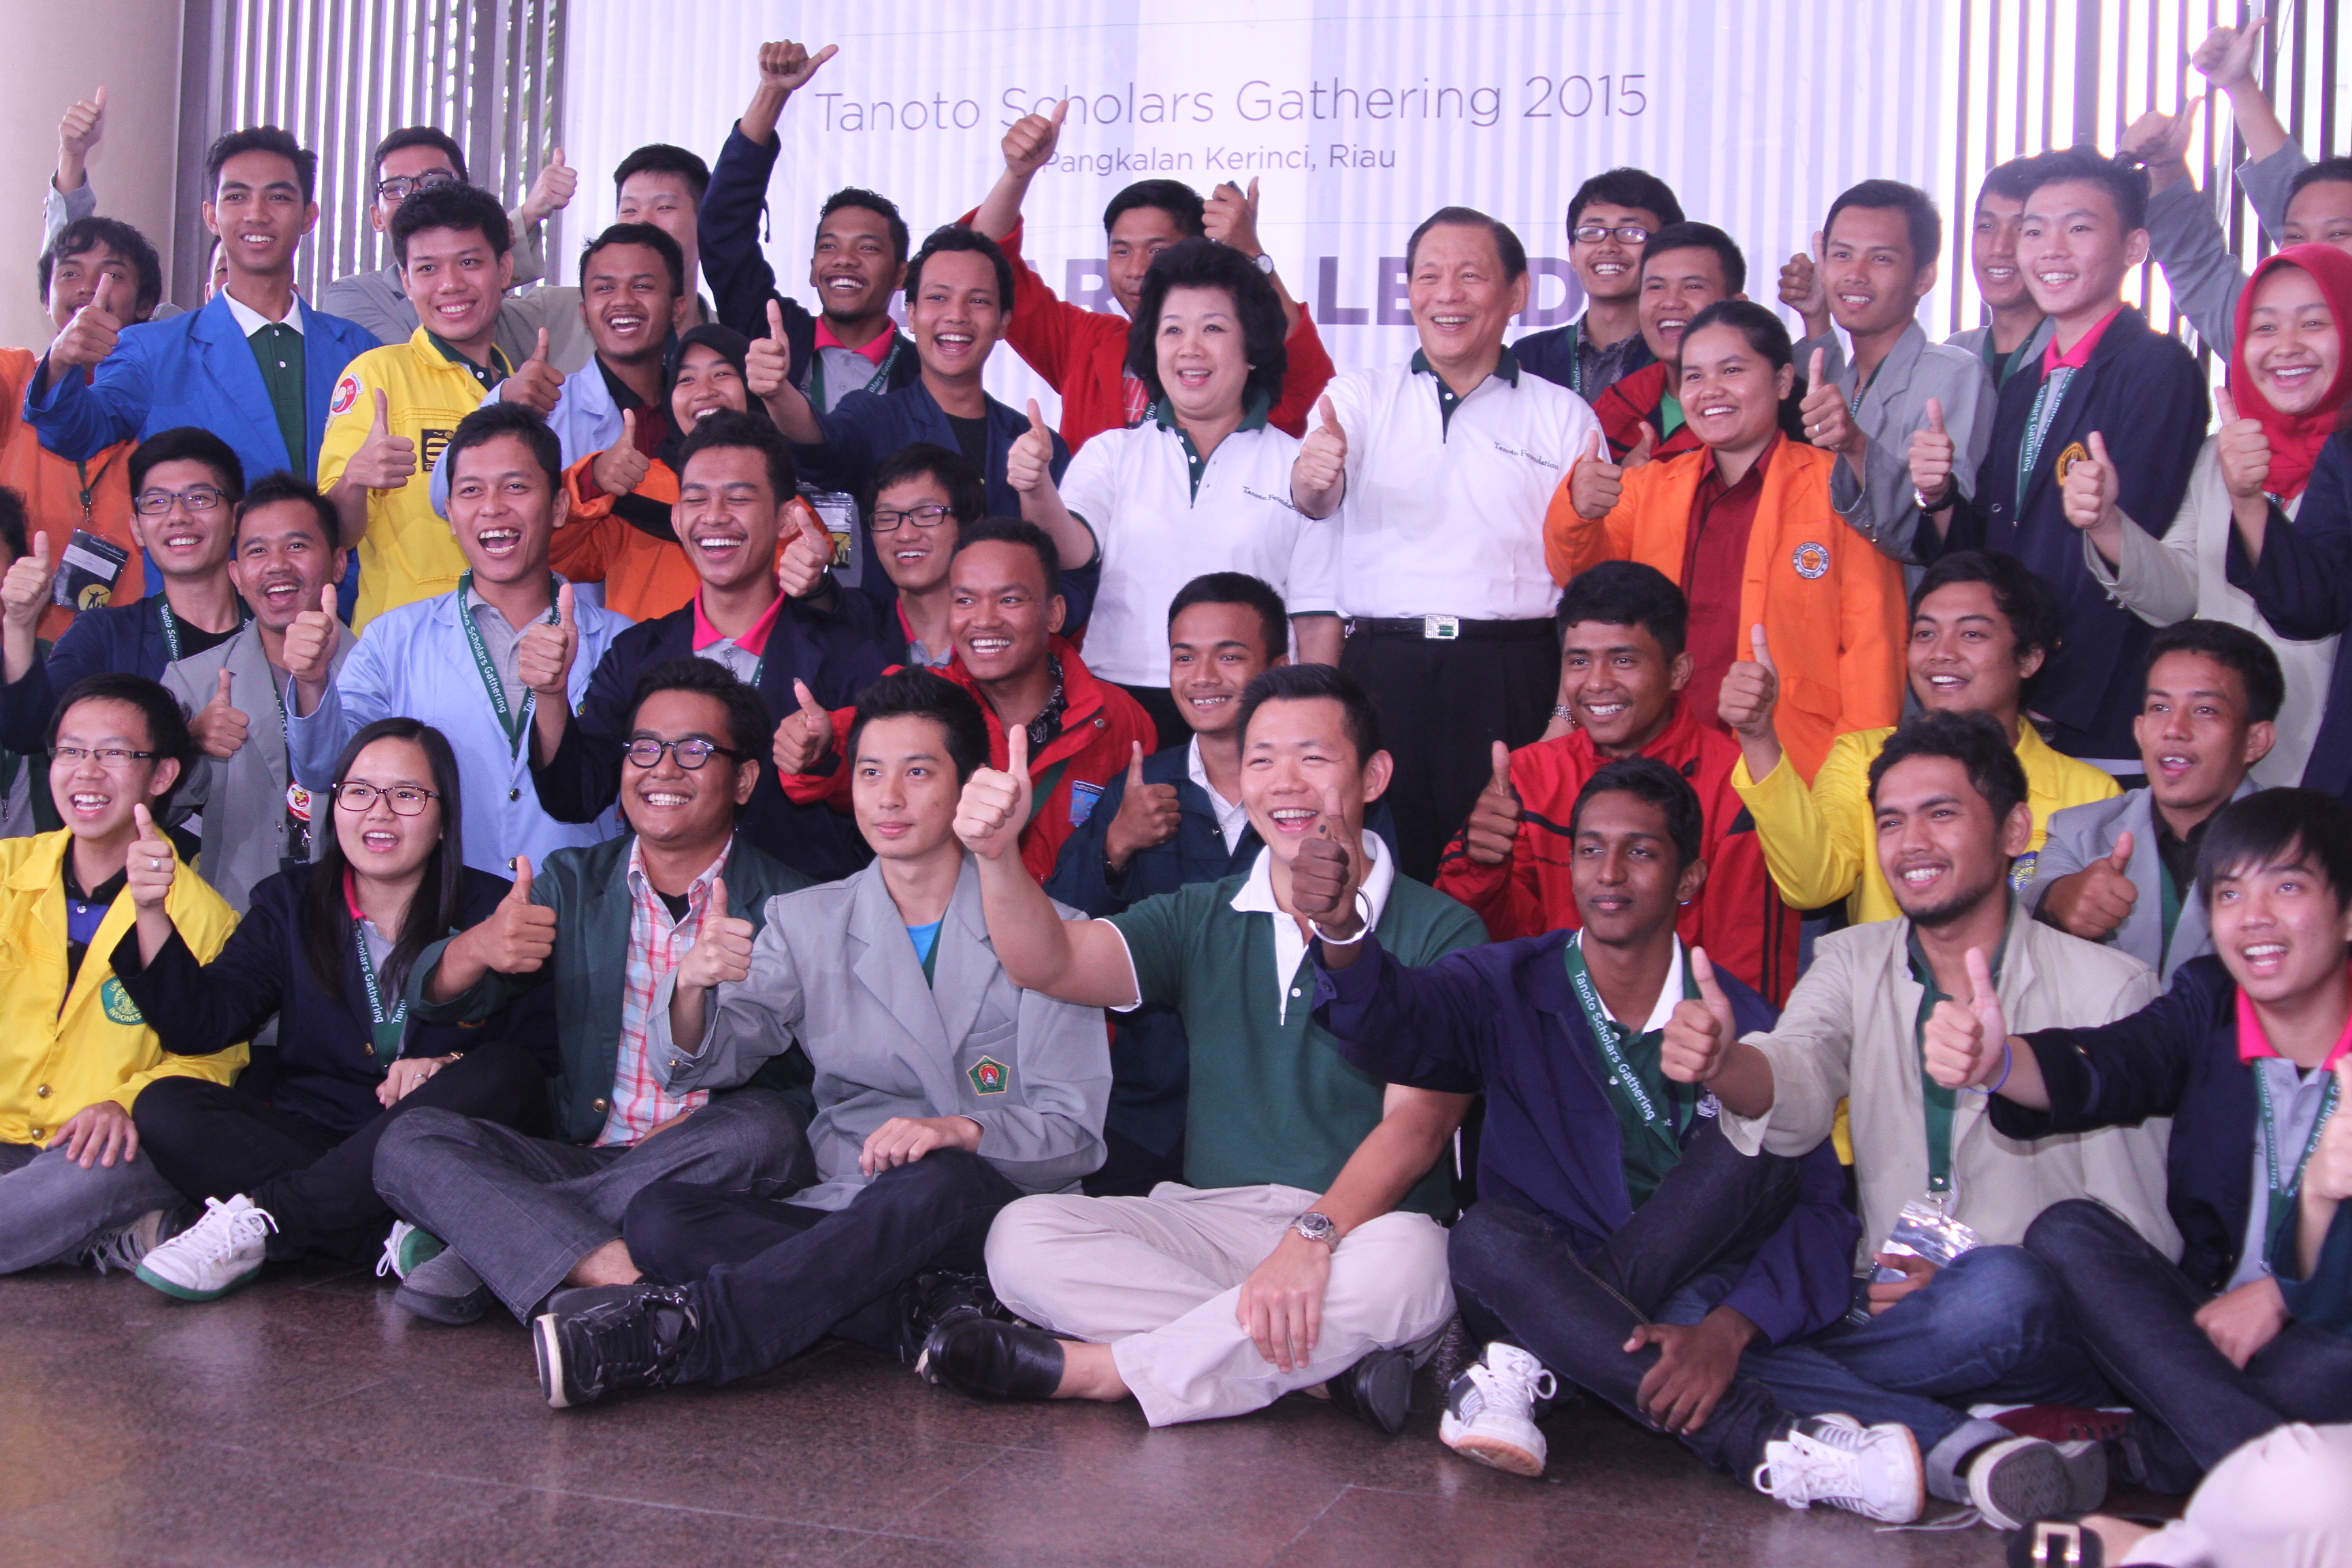 Tanoto Scholars Gathering Group Photo with Sukanto Tanoto Tinah Bingei Anderson Tanoto